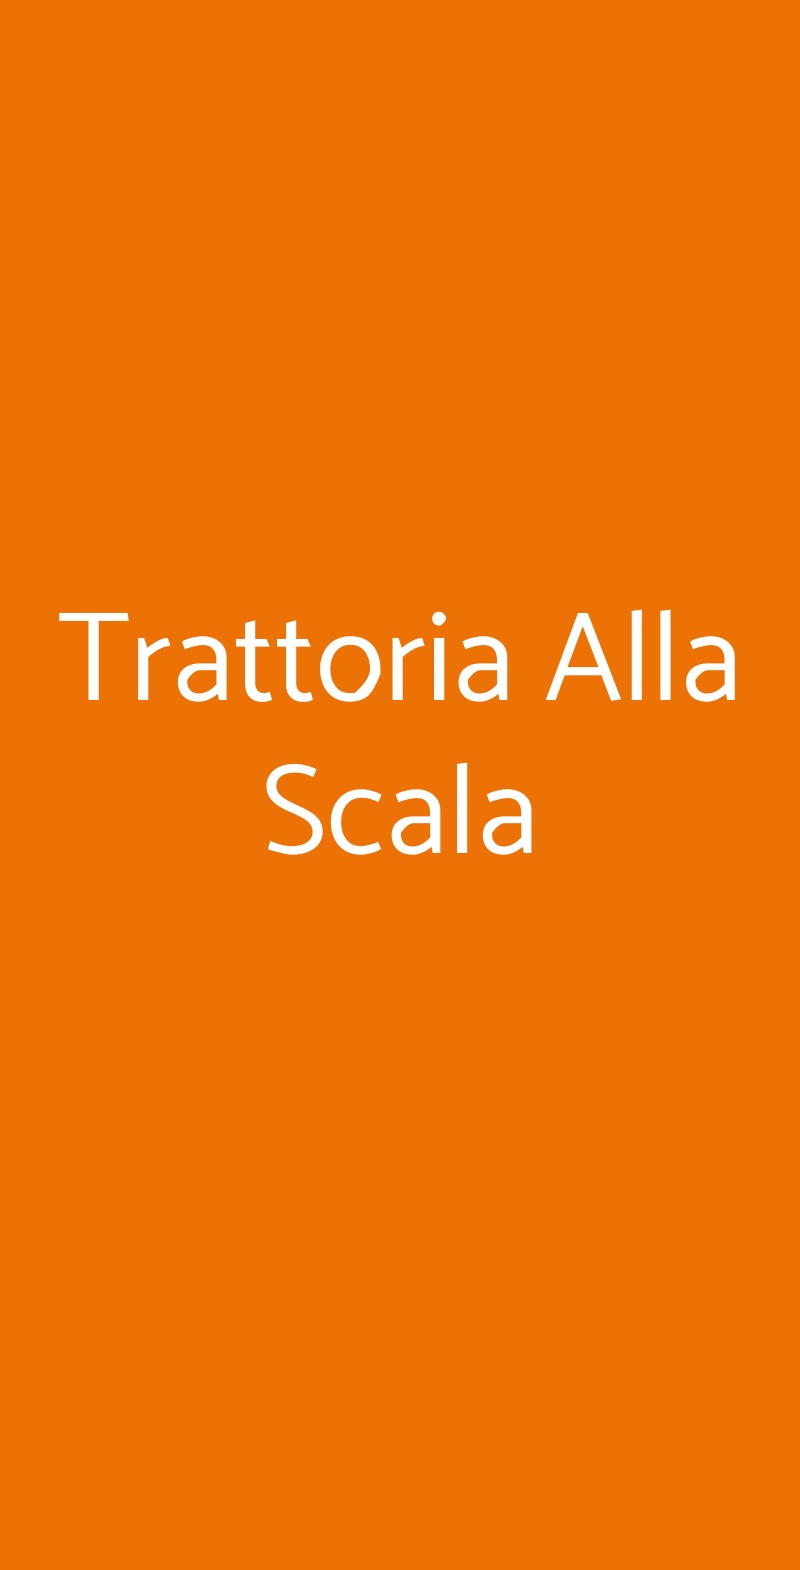 Trattoria Alla Scala Venezia menù 1 pagina